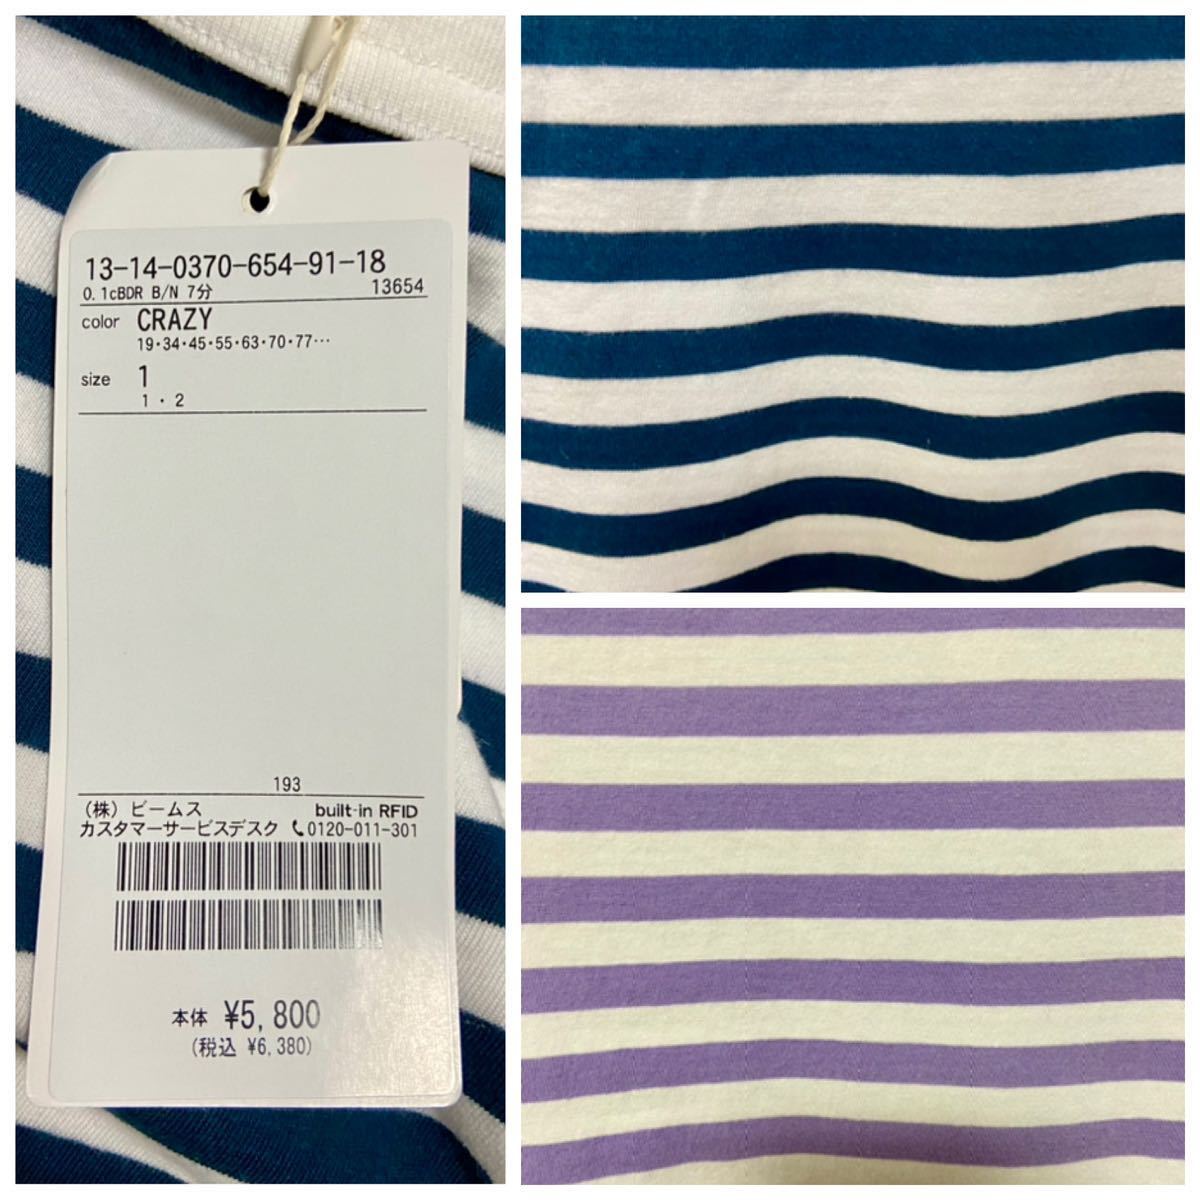 新品 BEAMS BOY 1cｍボーダー ボートネック 7分袖 カットソー Tシャツ 定価6380円 サイズ1